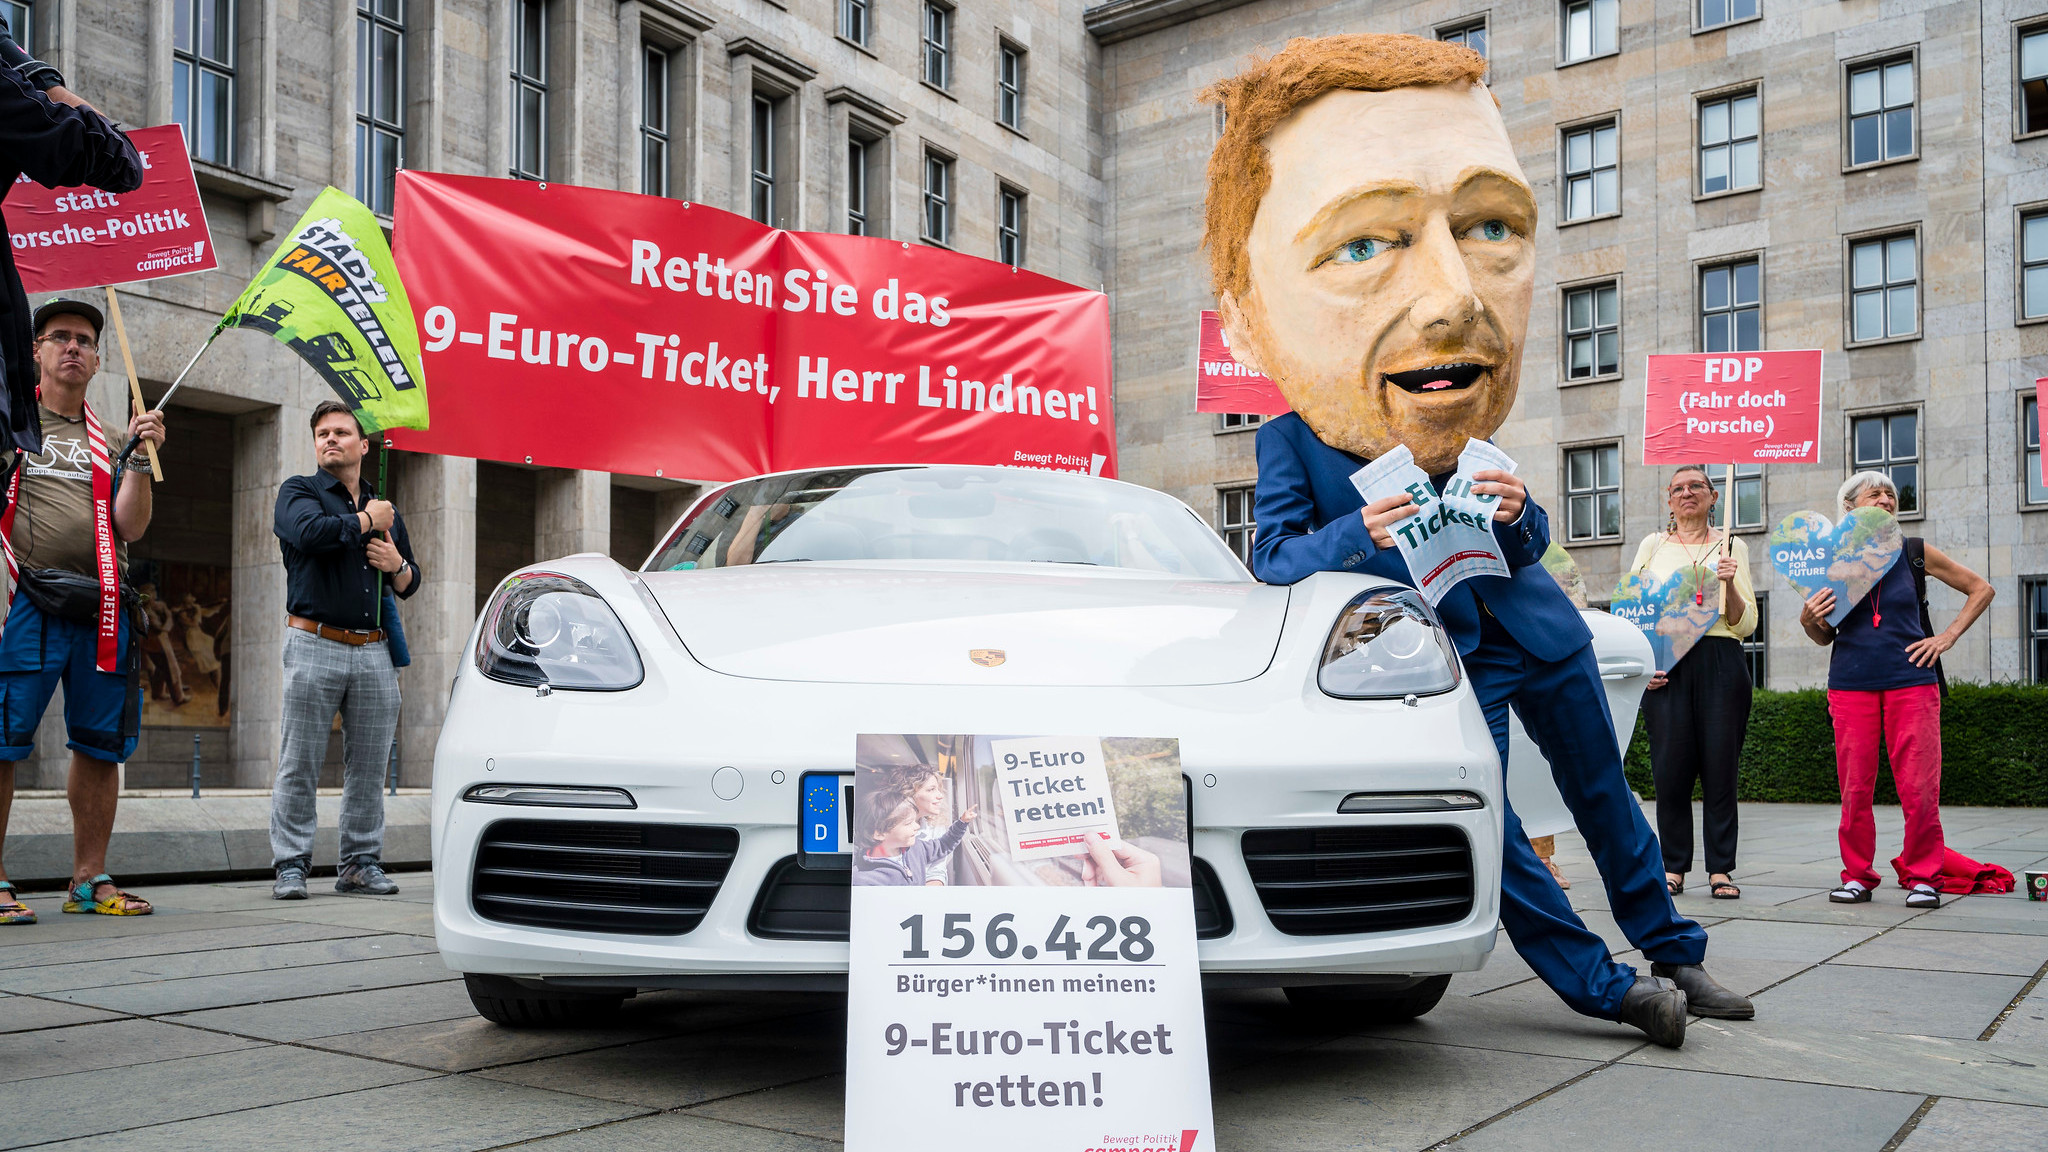 Eine Person trägt eine übergroße Nachbildung von Bundesfinanzminister Christian Lindner's Kopf und lehnt sich, beim zerreißen eines 9-Euro-Tickets, an ein Porsche-Cabrio. Vor dem Auto steht der Appell "9-Euro-Ticket retten!".